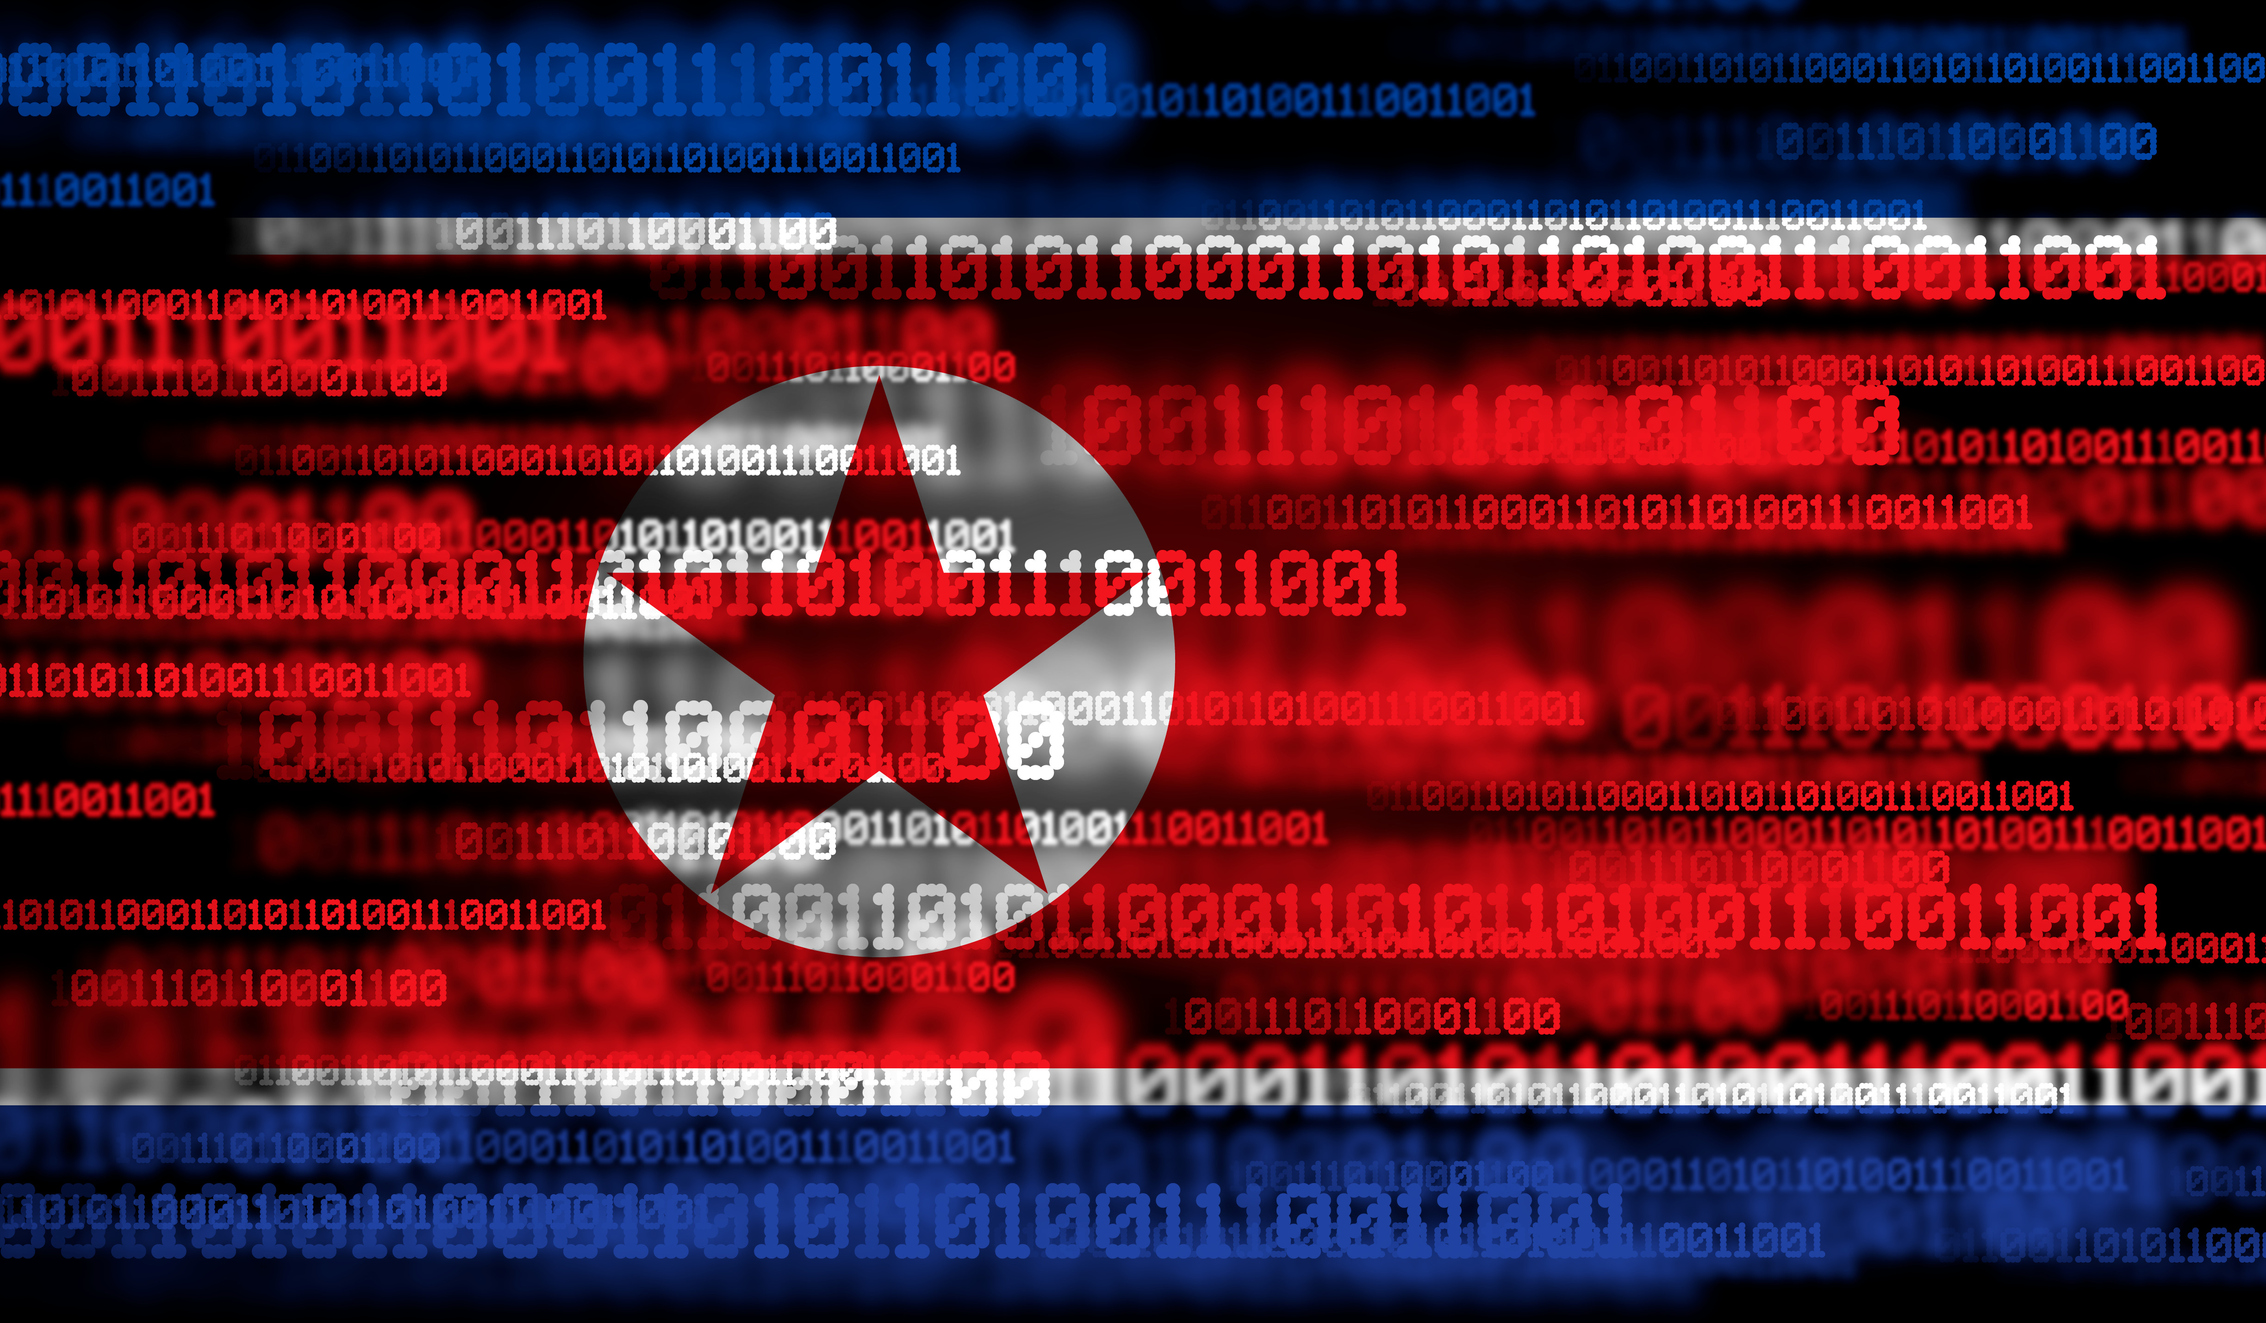 Des cybercriminels nord-coréens ont espionné un fabricant de missiles russe